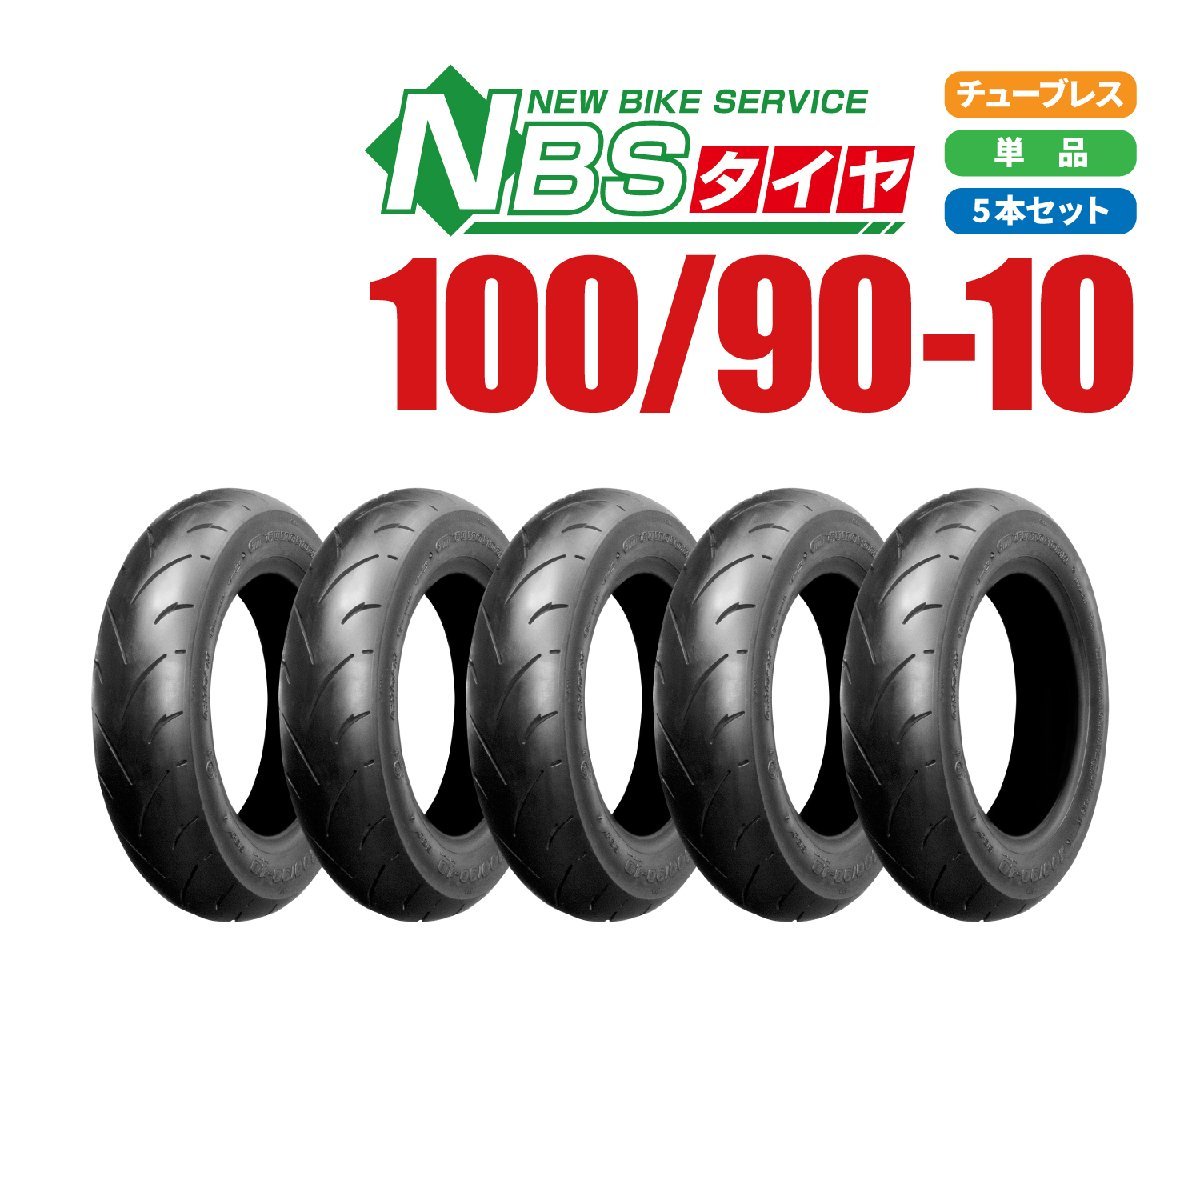 新品 NBS スクーター タイヤ 100/90-10 56J T/L 5本セット スペイシー リード110/100 アドレス バイクパーツセンター_画像1